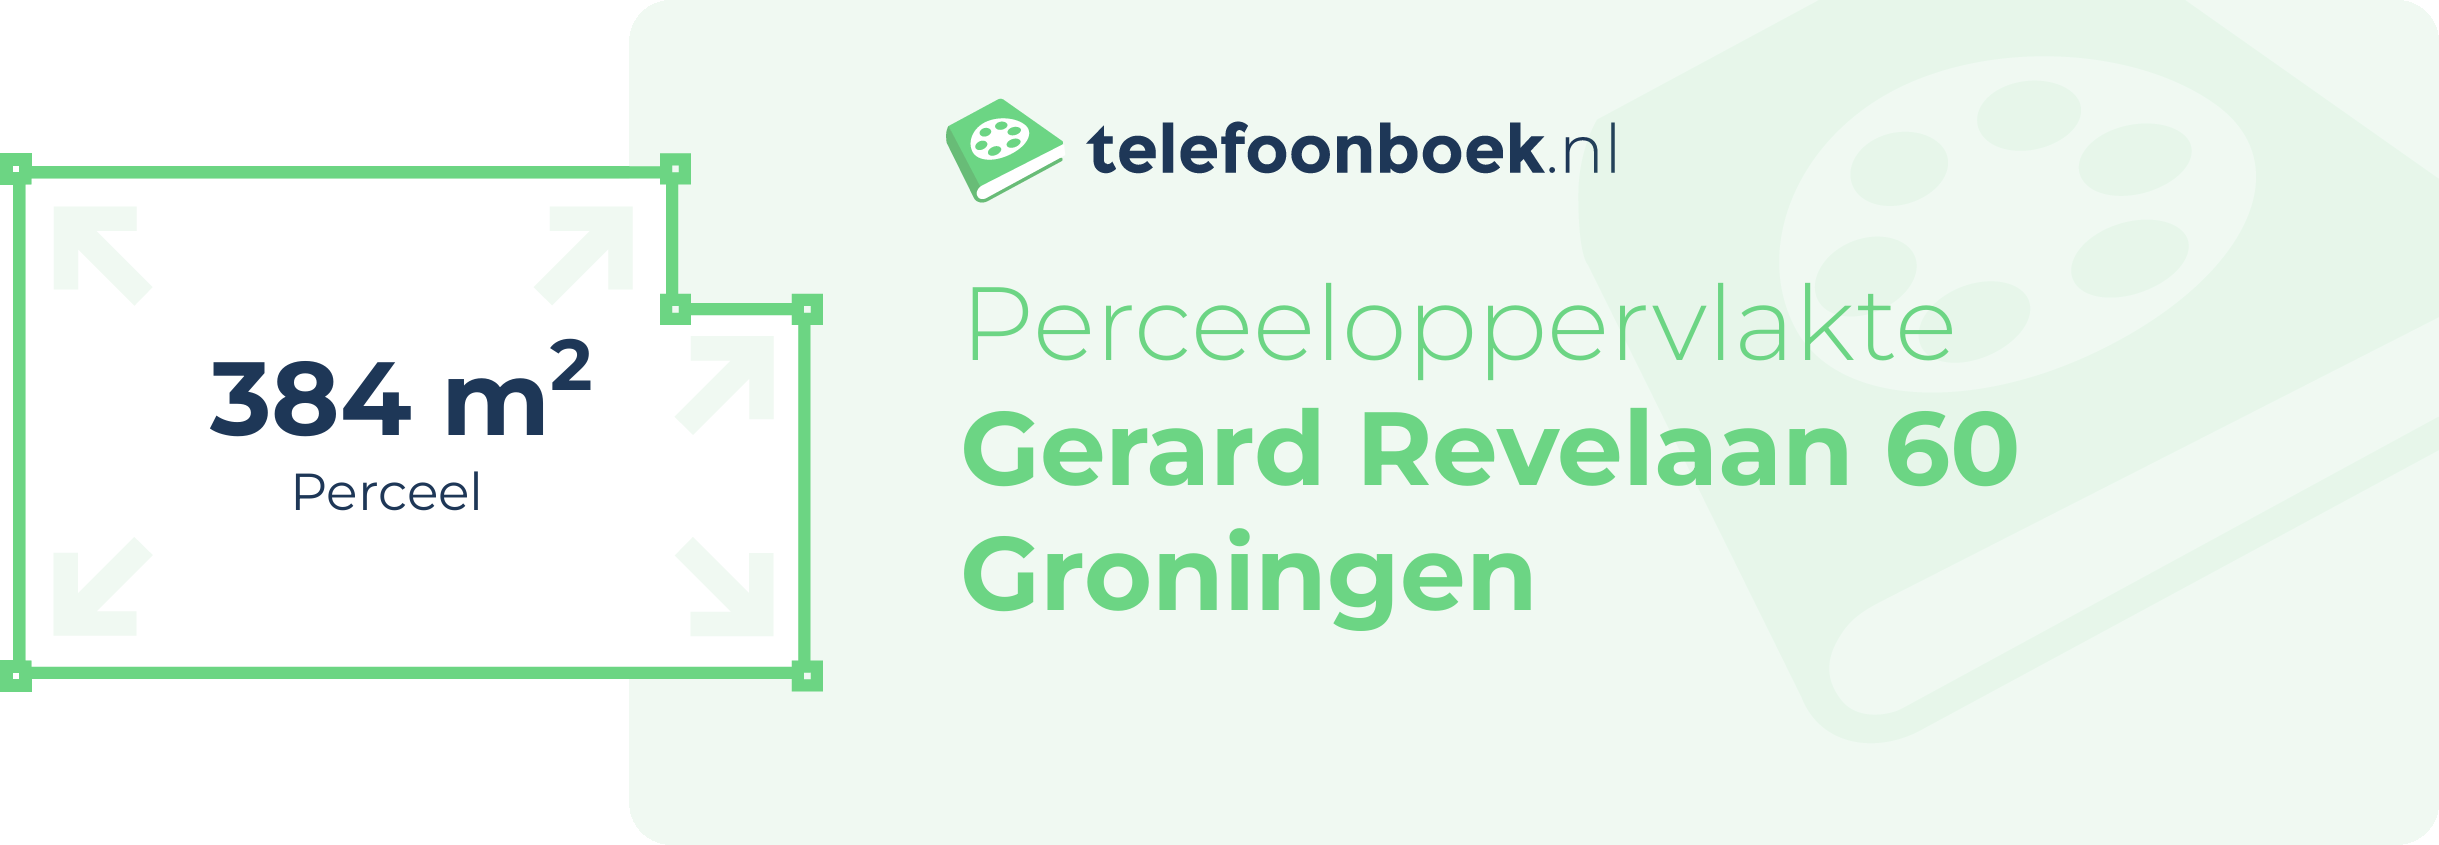 Perceeloppervlakte Gerard Revelaan 60 Groningen